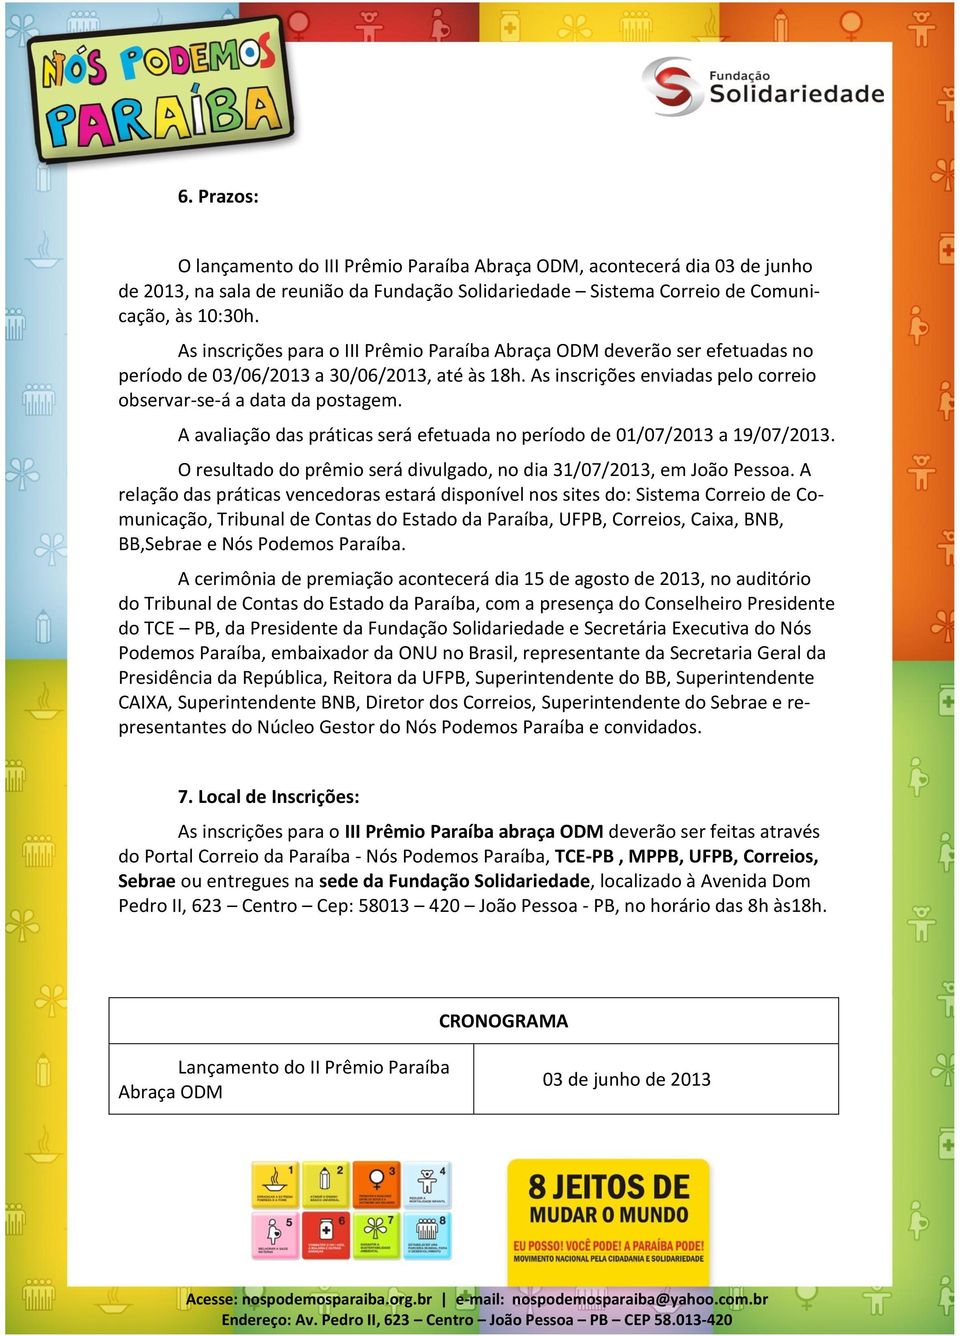 A avaliação das práticas será efetuada no período de 01/07/2013 a 19/07/2013. O resultado do prêmio será divulgado, no dia 31/07/2013, em João Pessoa.